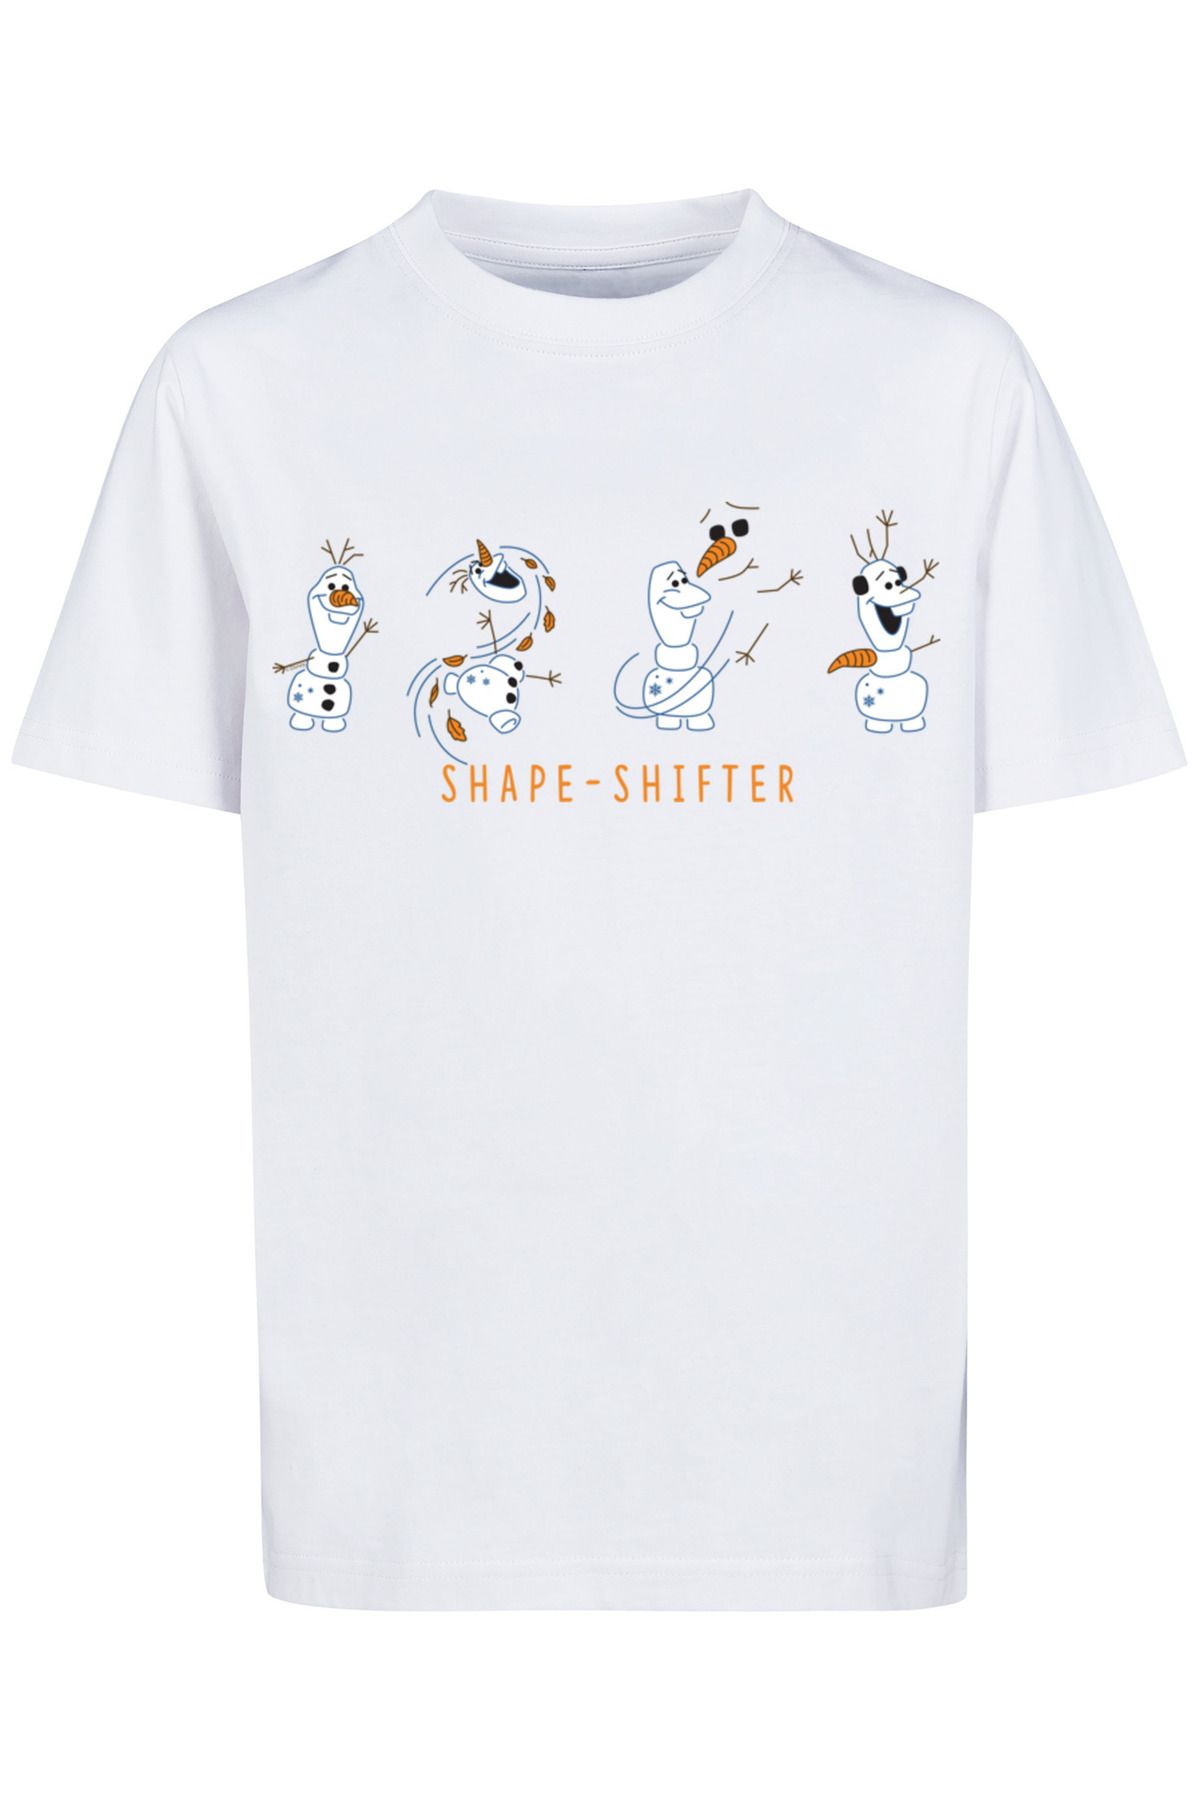 Frozen Trendyol mit Disney Kinder F4NT4STIC Olaf Kids Shape-Shifter - Basic 2 T-Shirt